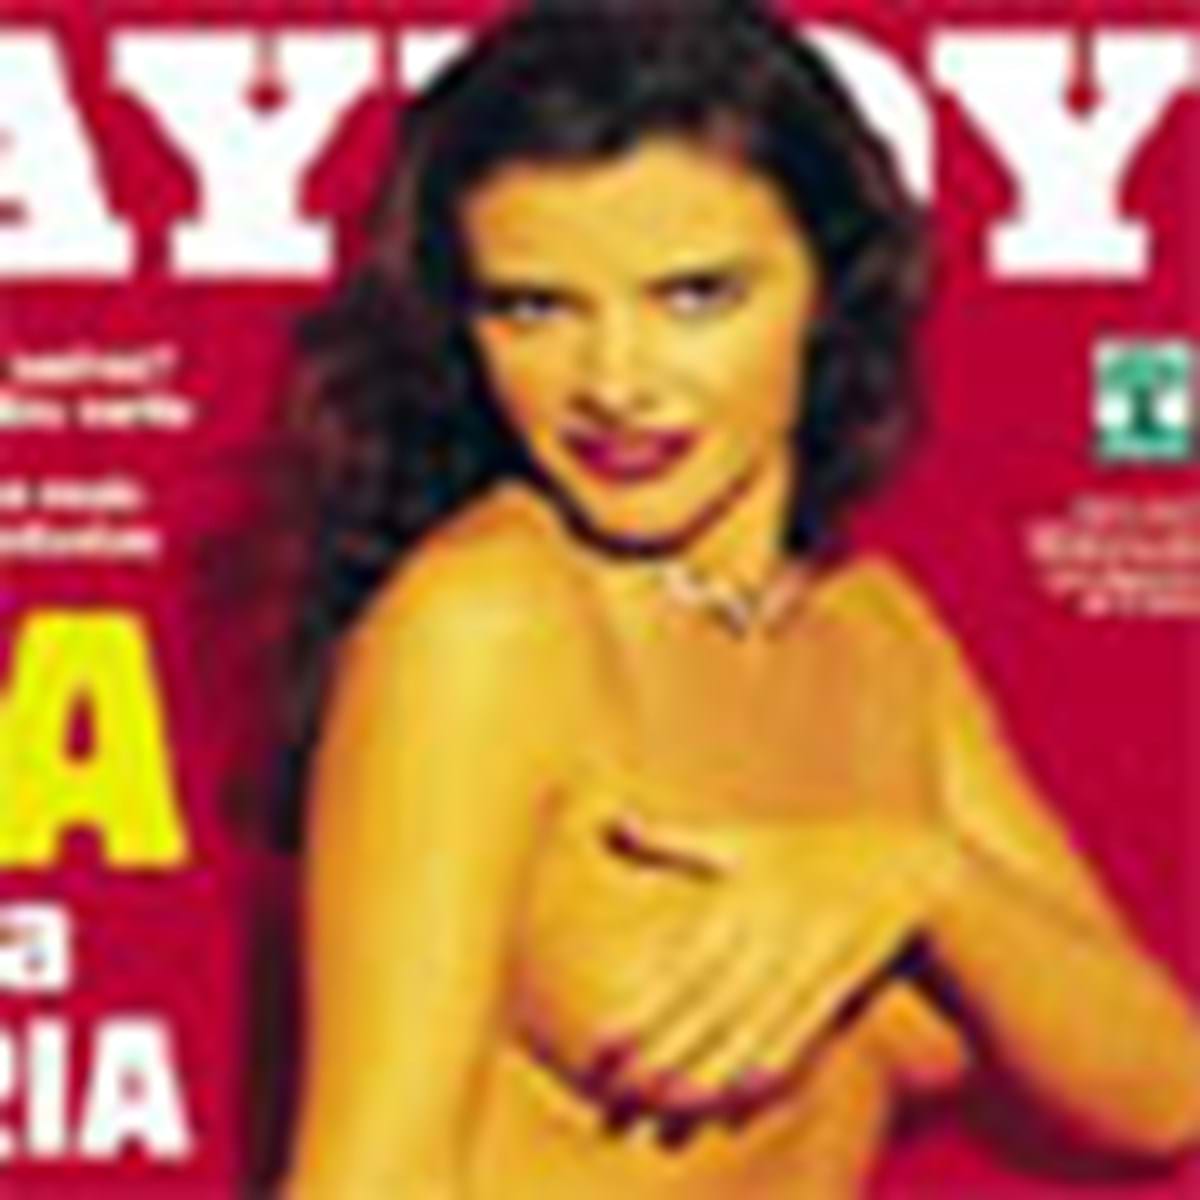 Capas da Playboy Brasil - Multimédia - Correio da Manhã